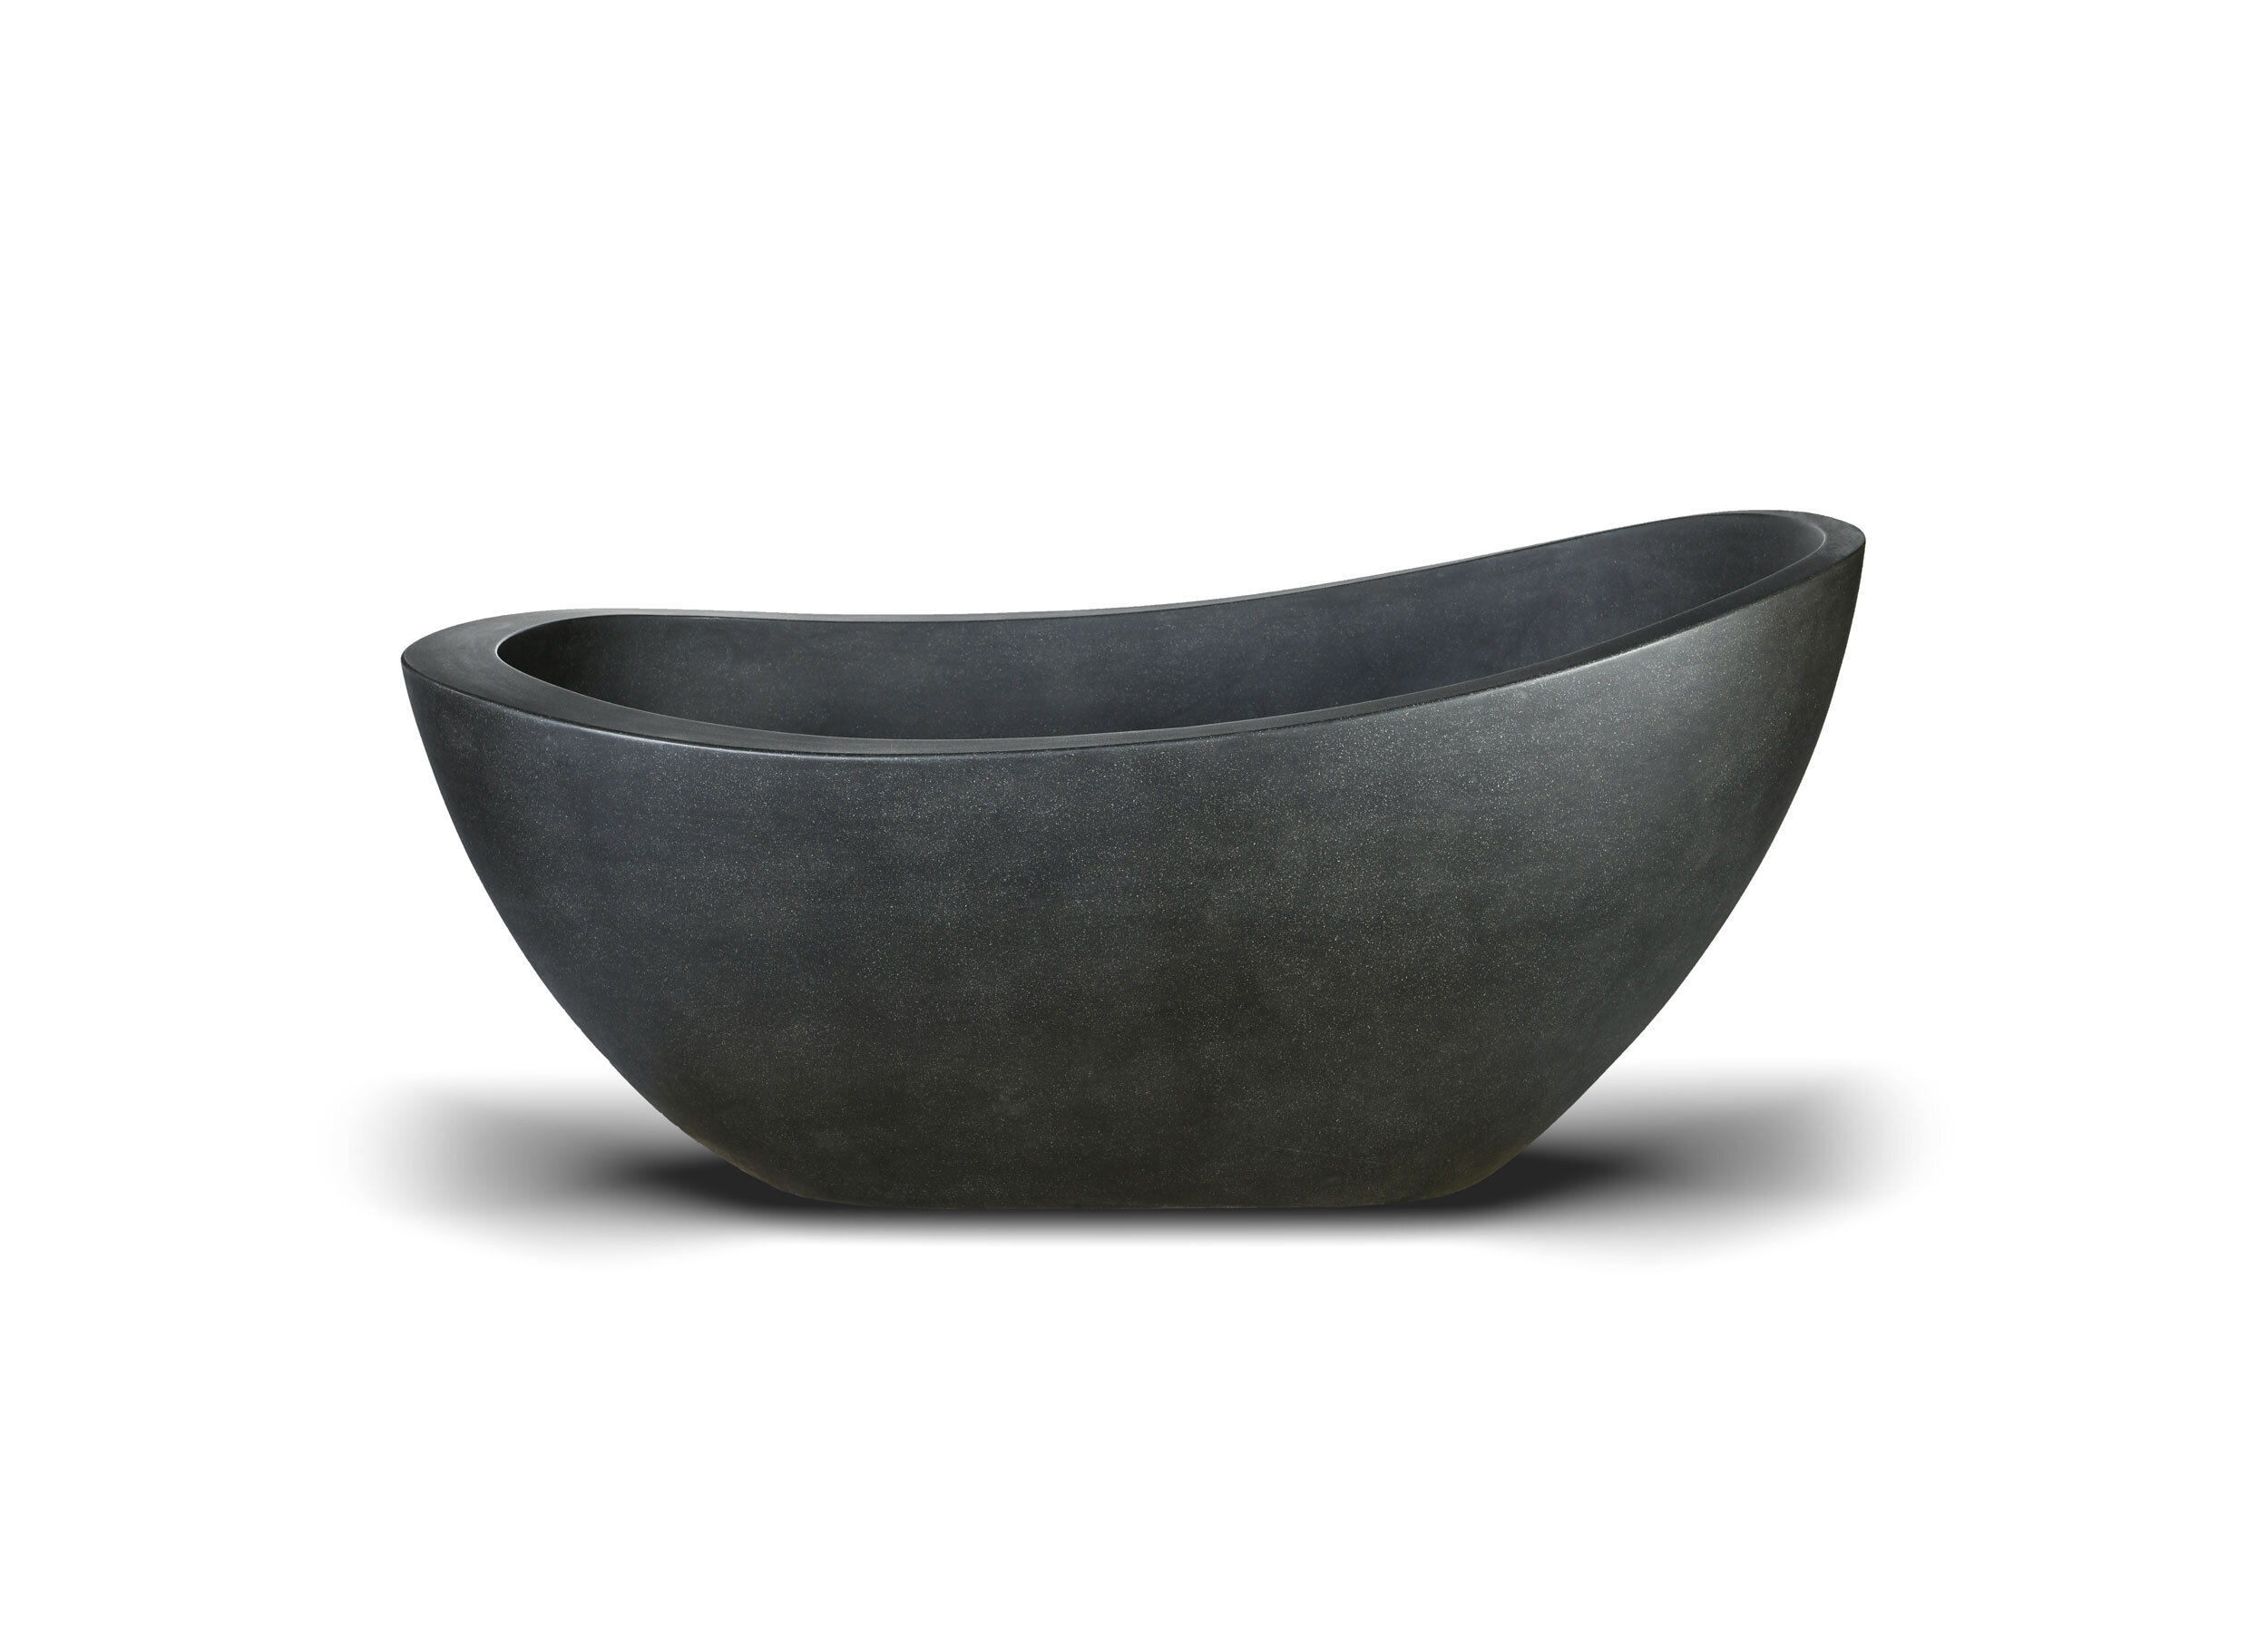 Face view of our Da Vinci Stone Bath in dark grey colour